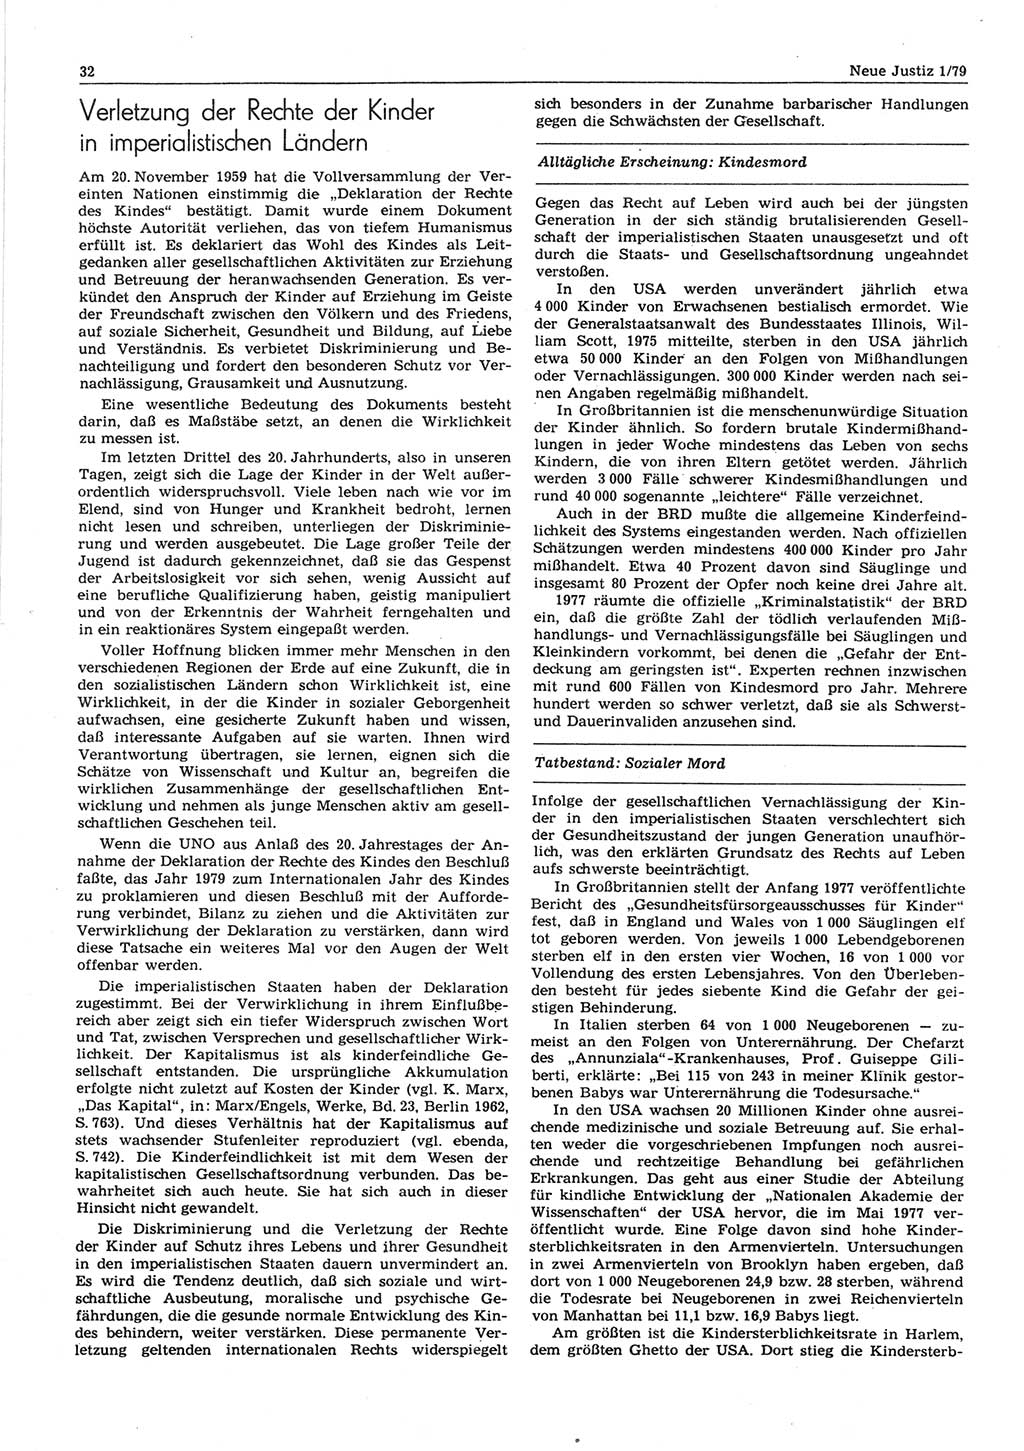 Neue Justiz (NJ), Zeitschrift für sozialistisches Recht und Gesetzlichkeit [Deutsche Demokratische Republik (DDR)], 33. Jahrgang 1979, Seite 32 (NJ DDR 1979, S. 32)